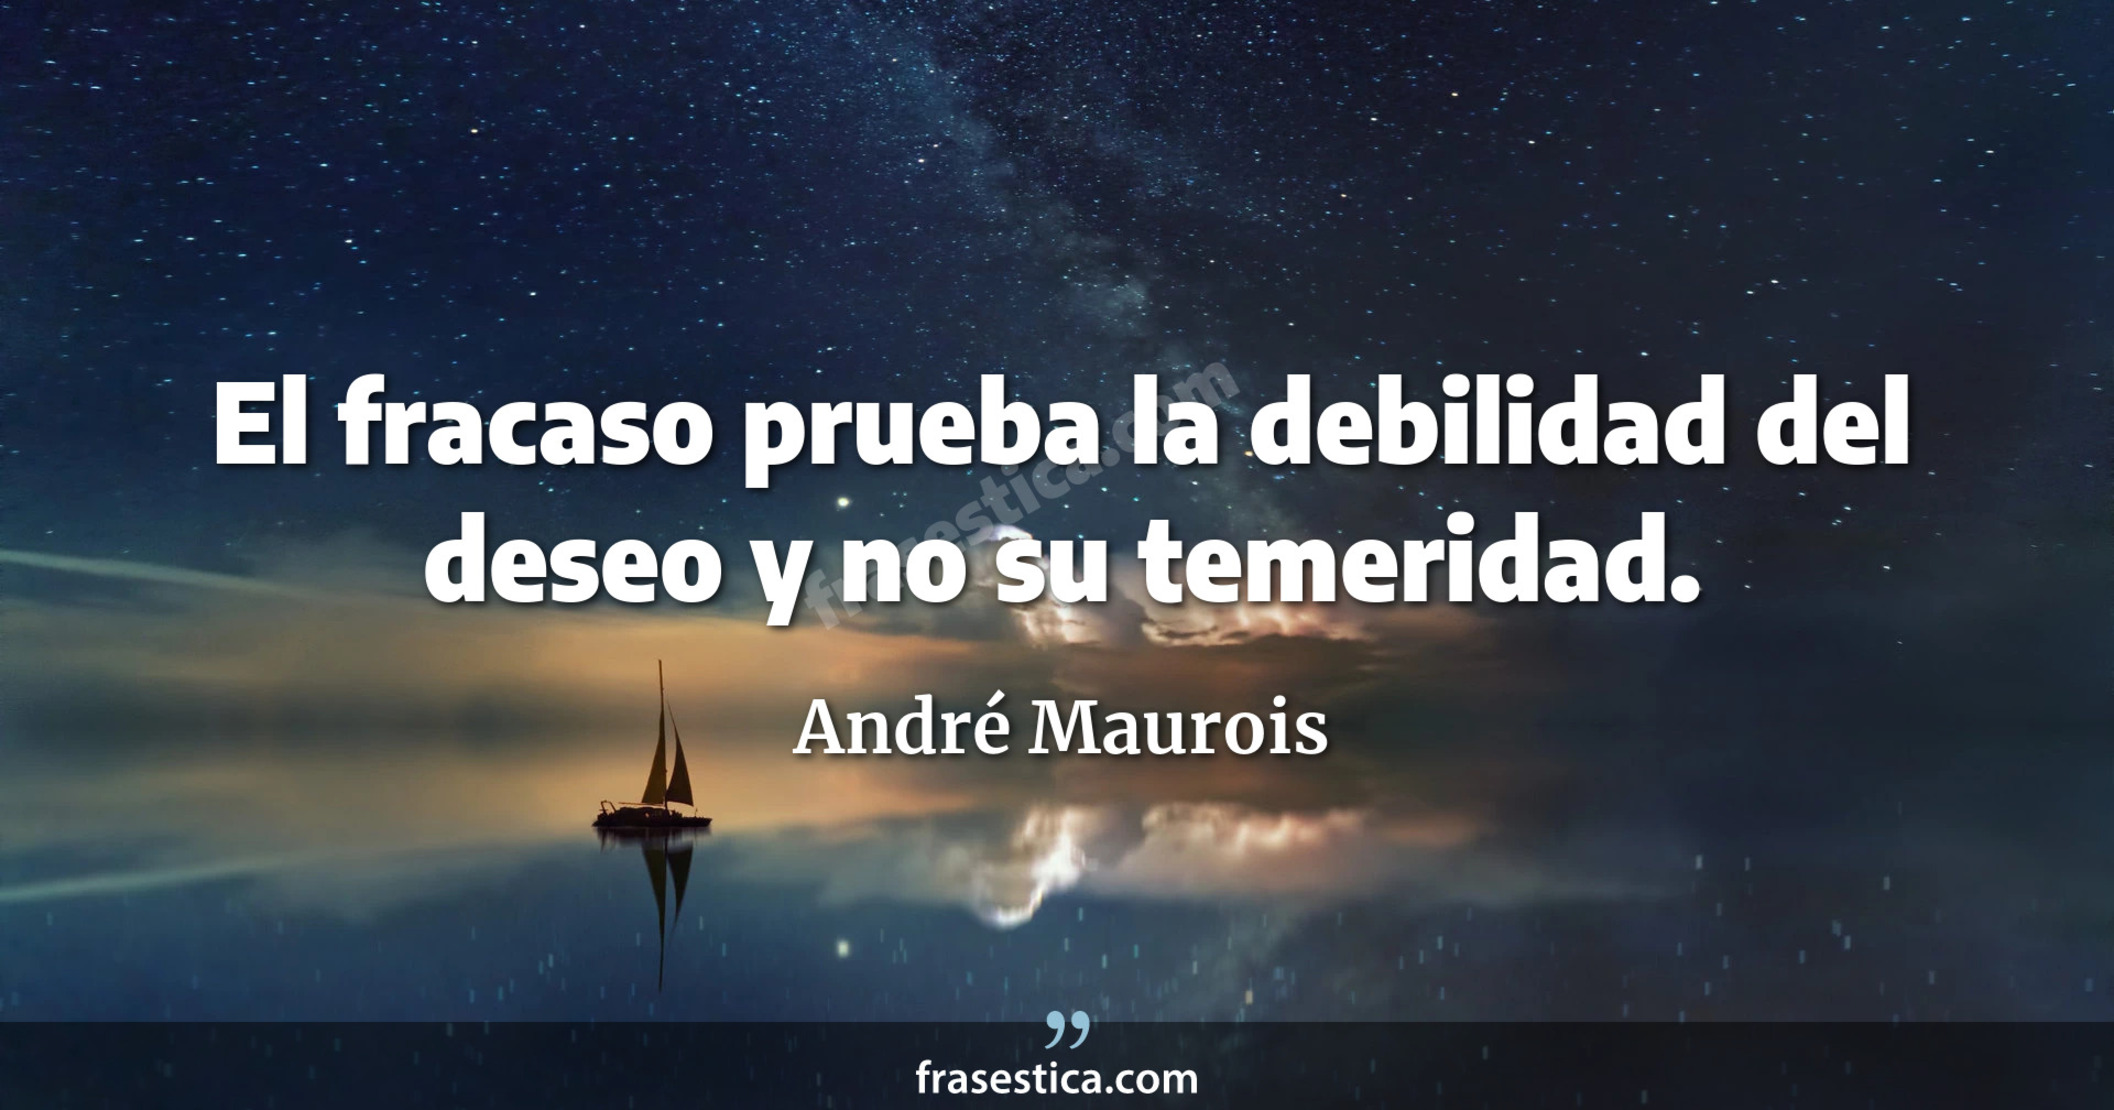 El fracaso prueba la debilidad del deseo y no su temeridad. - André Maurois